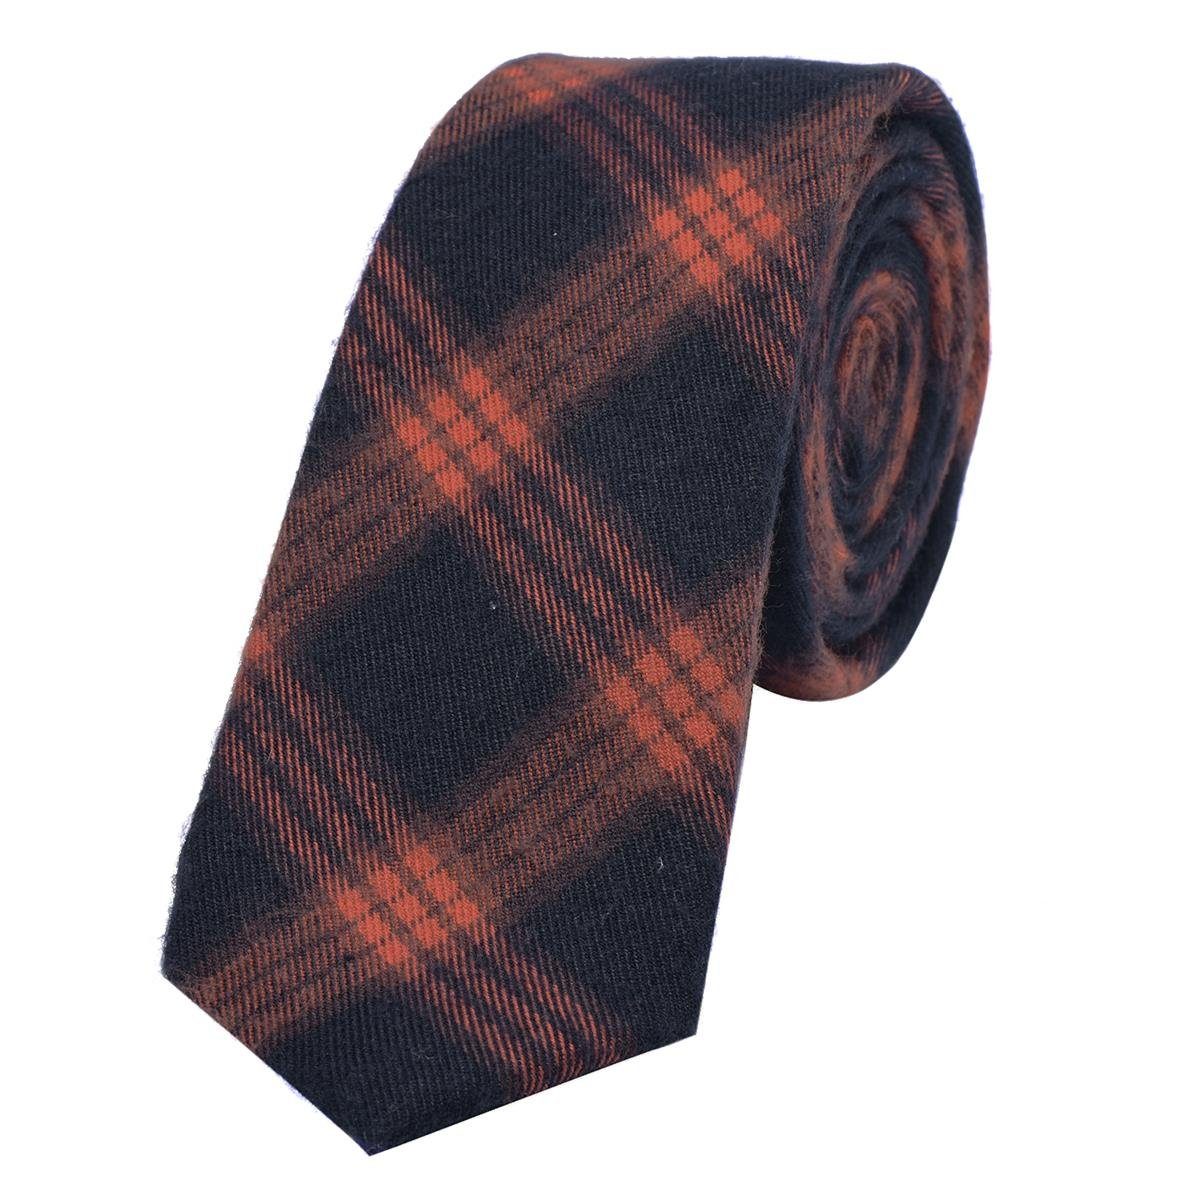 DonDon Krawatte Herren Krawatte 6 cm einfarbig kariert und gepunkt (Packung, 1-St., 1x Krawatte) Baumwolle, verschiedene Muster, für Büro oder festliche Veranstaltungen dunkelblau-orange kariert